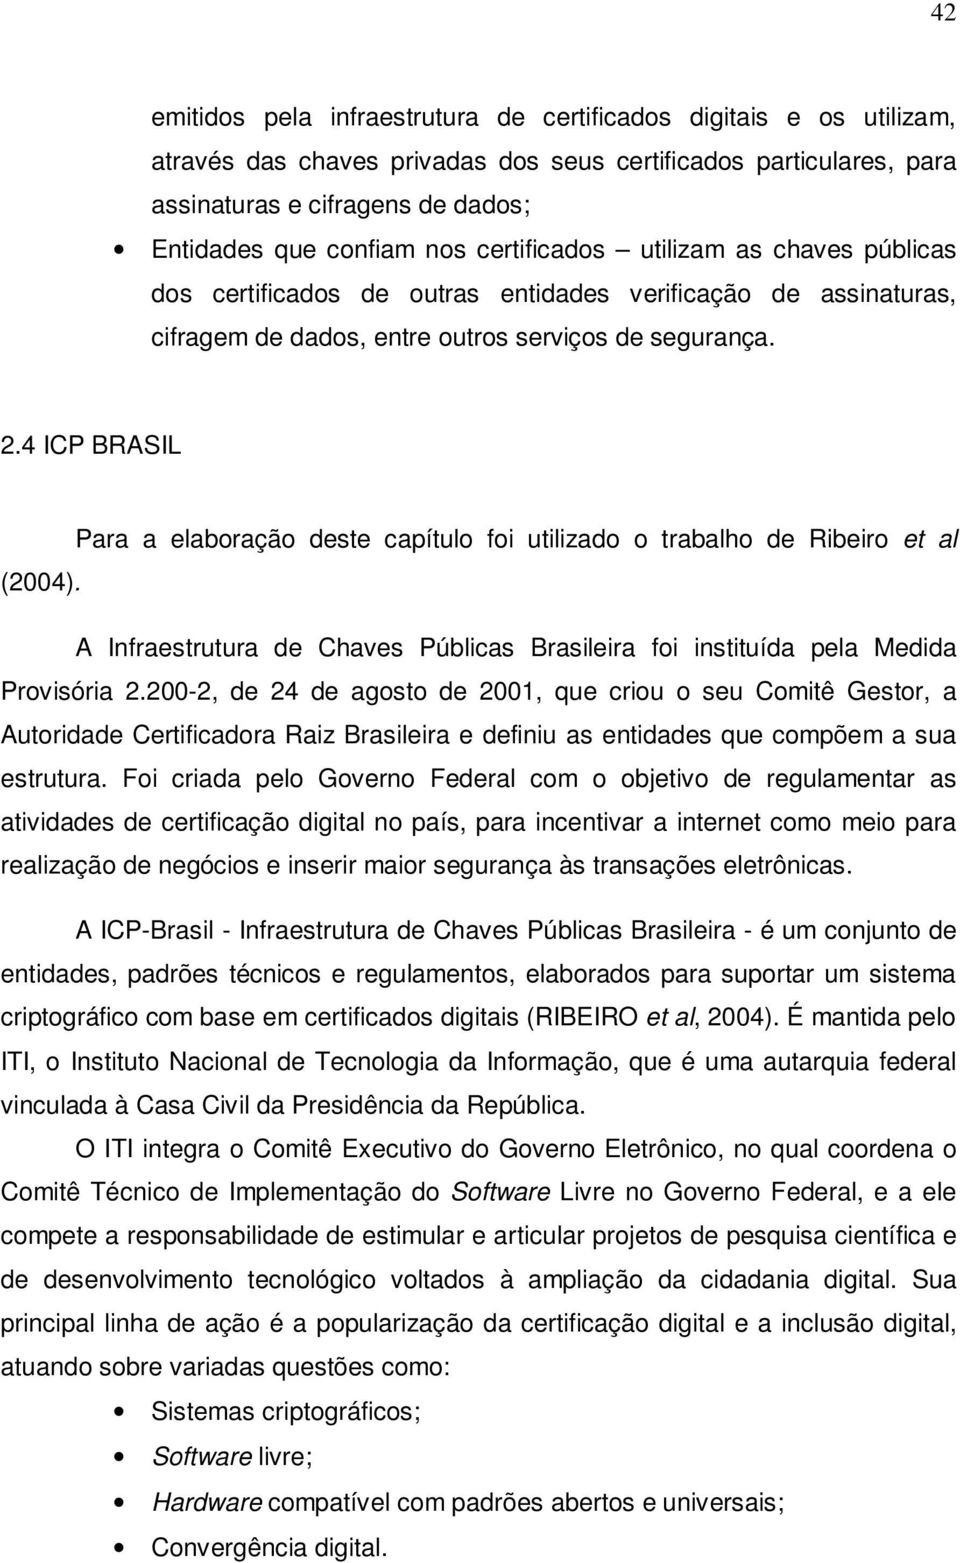 4 ICP BRASIL Para a elaboração deste capítulo foi utilizado o trabalho de Ribeiro et al (2004). A Infraestrutura de Chaves Públicas Brasileira foi instituída pela Medida Provisória 2.